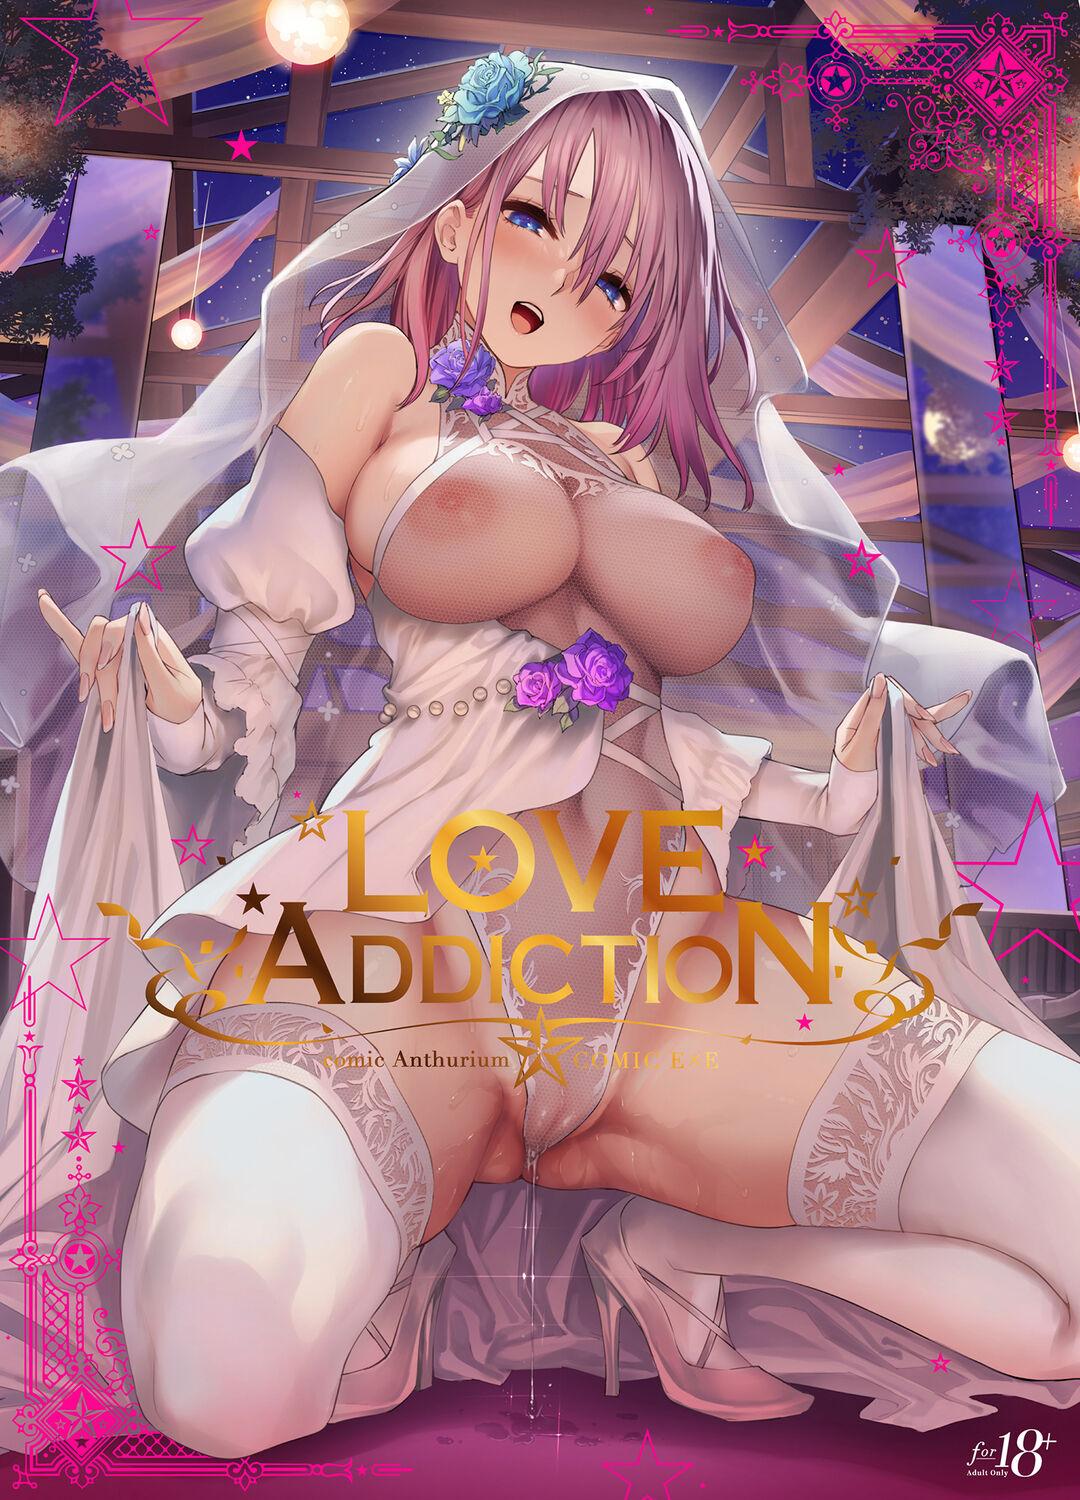 LOVE ADDICTION 0